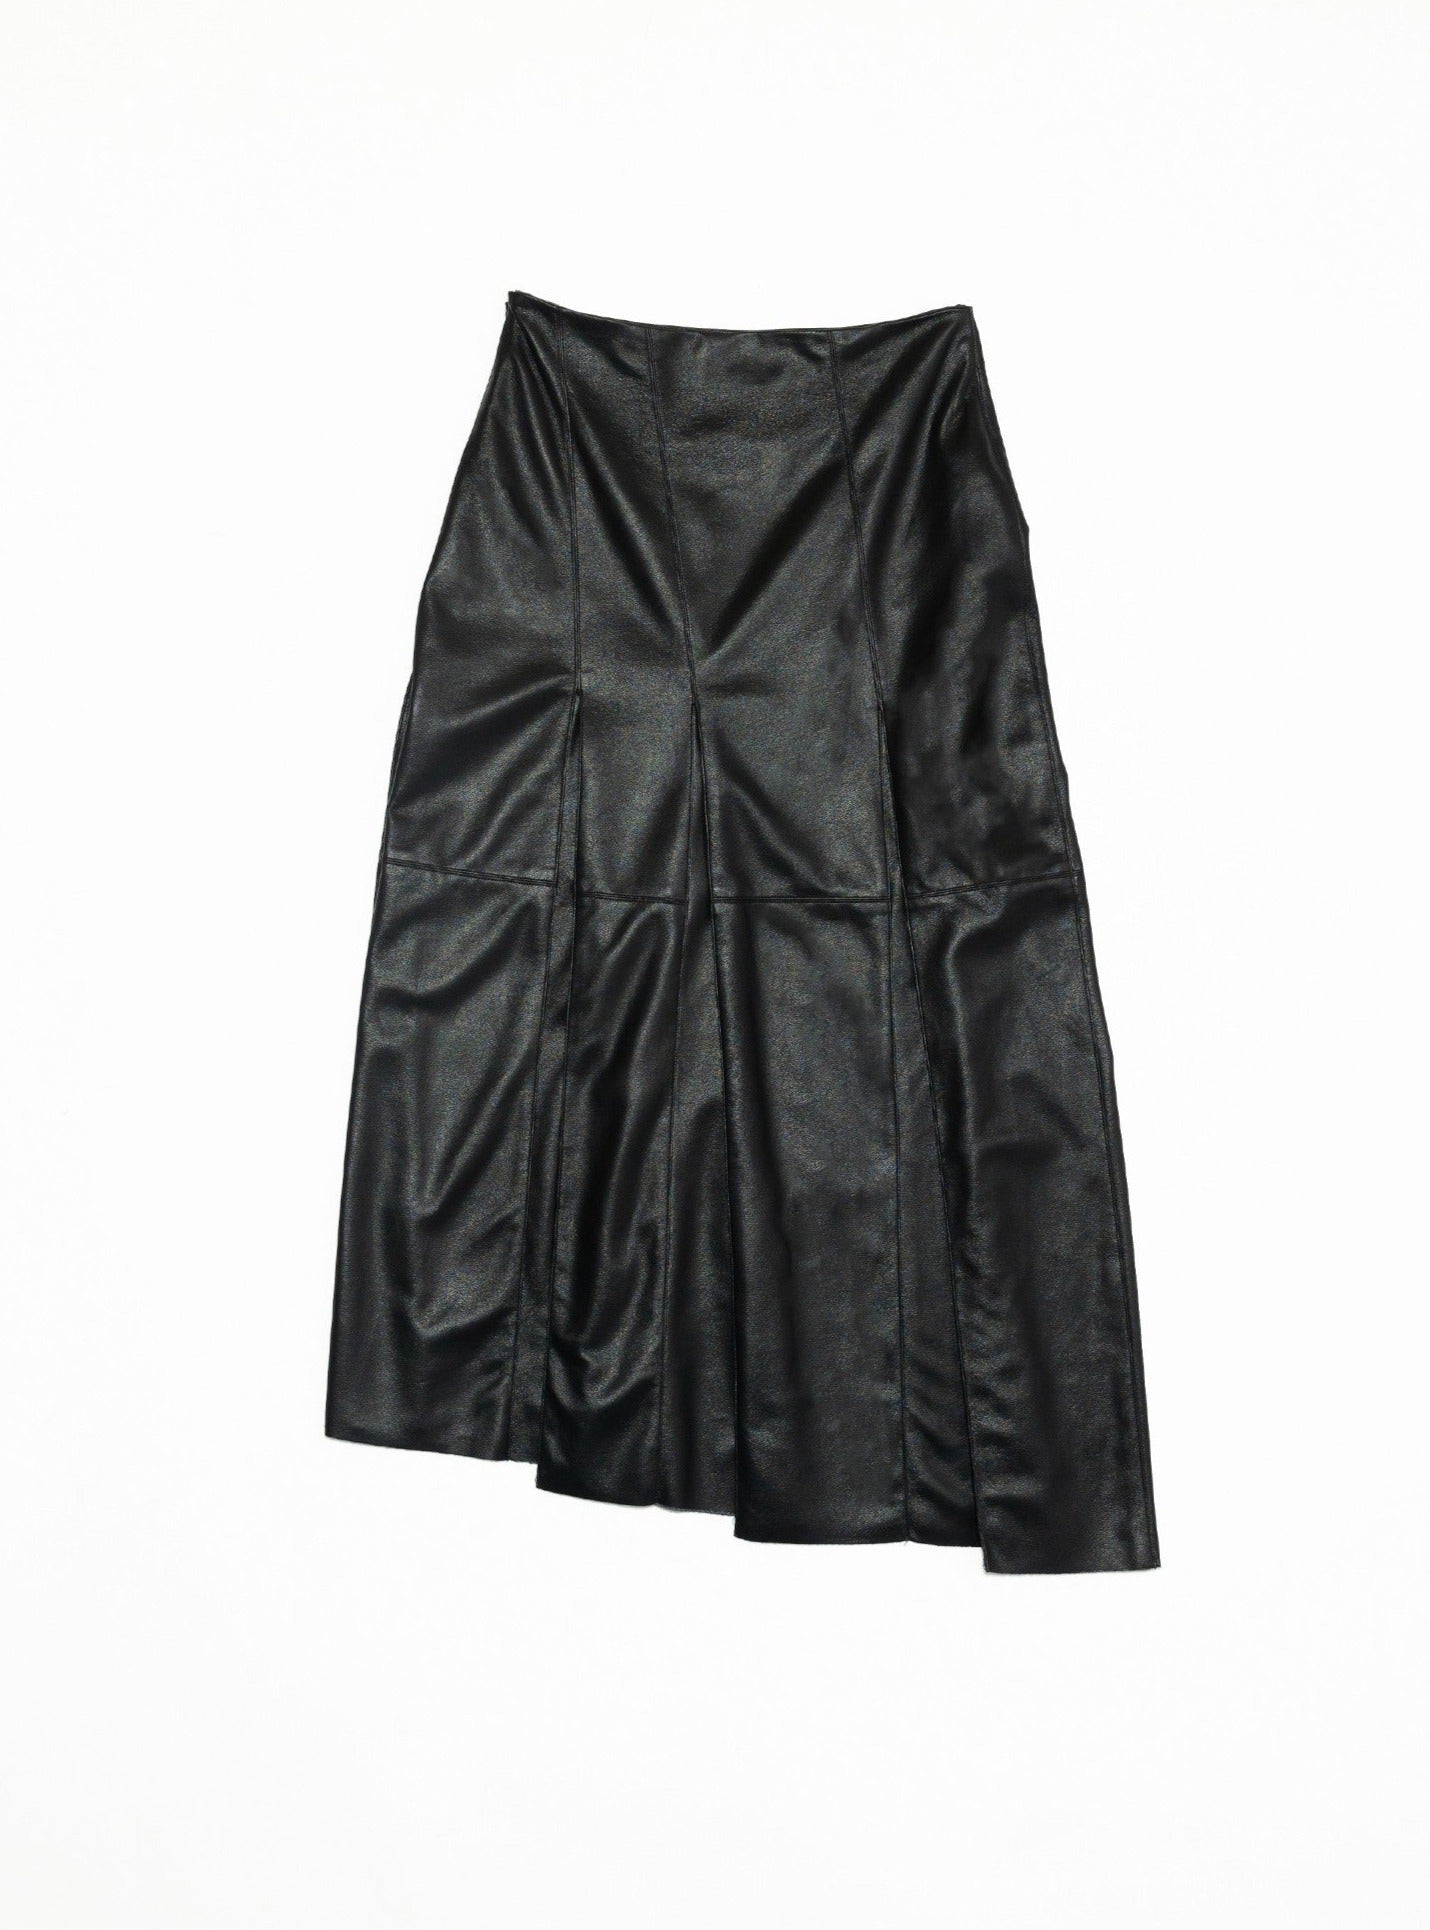 Black Vegan Leather Pleat Midi Skirt